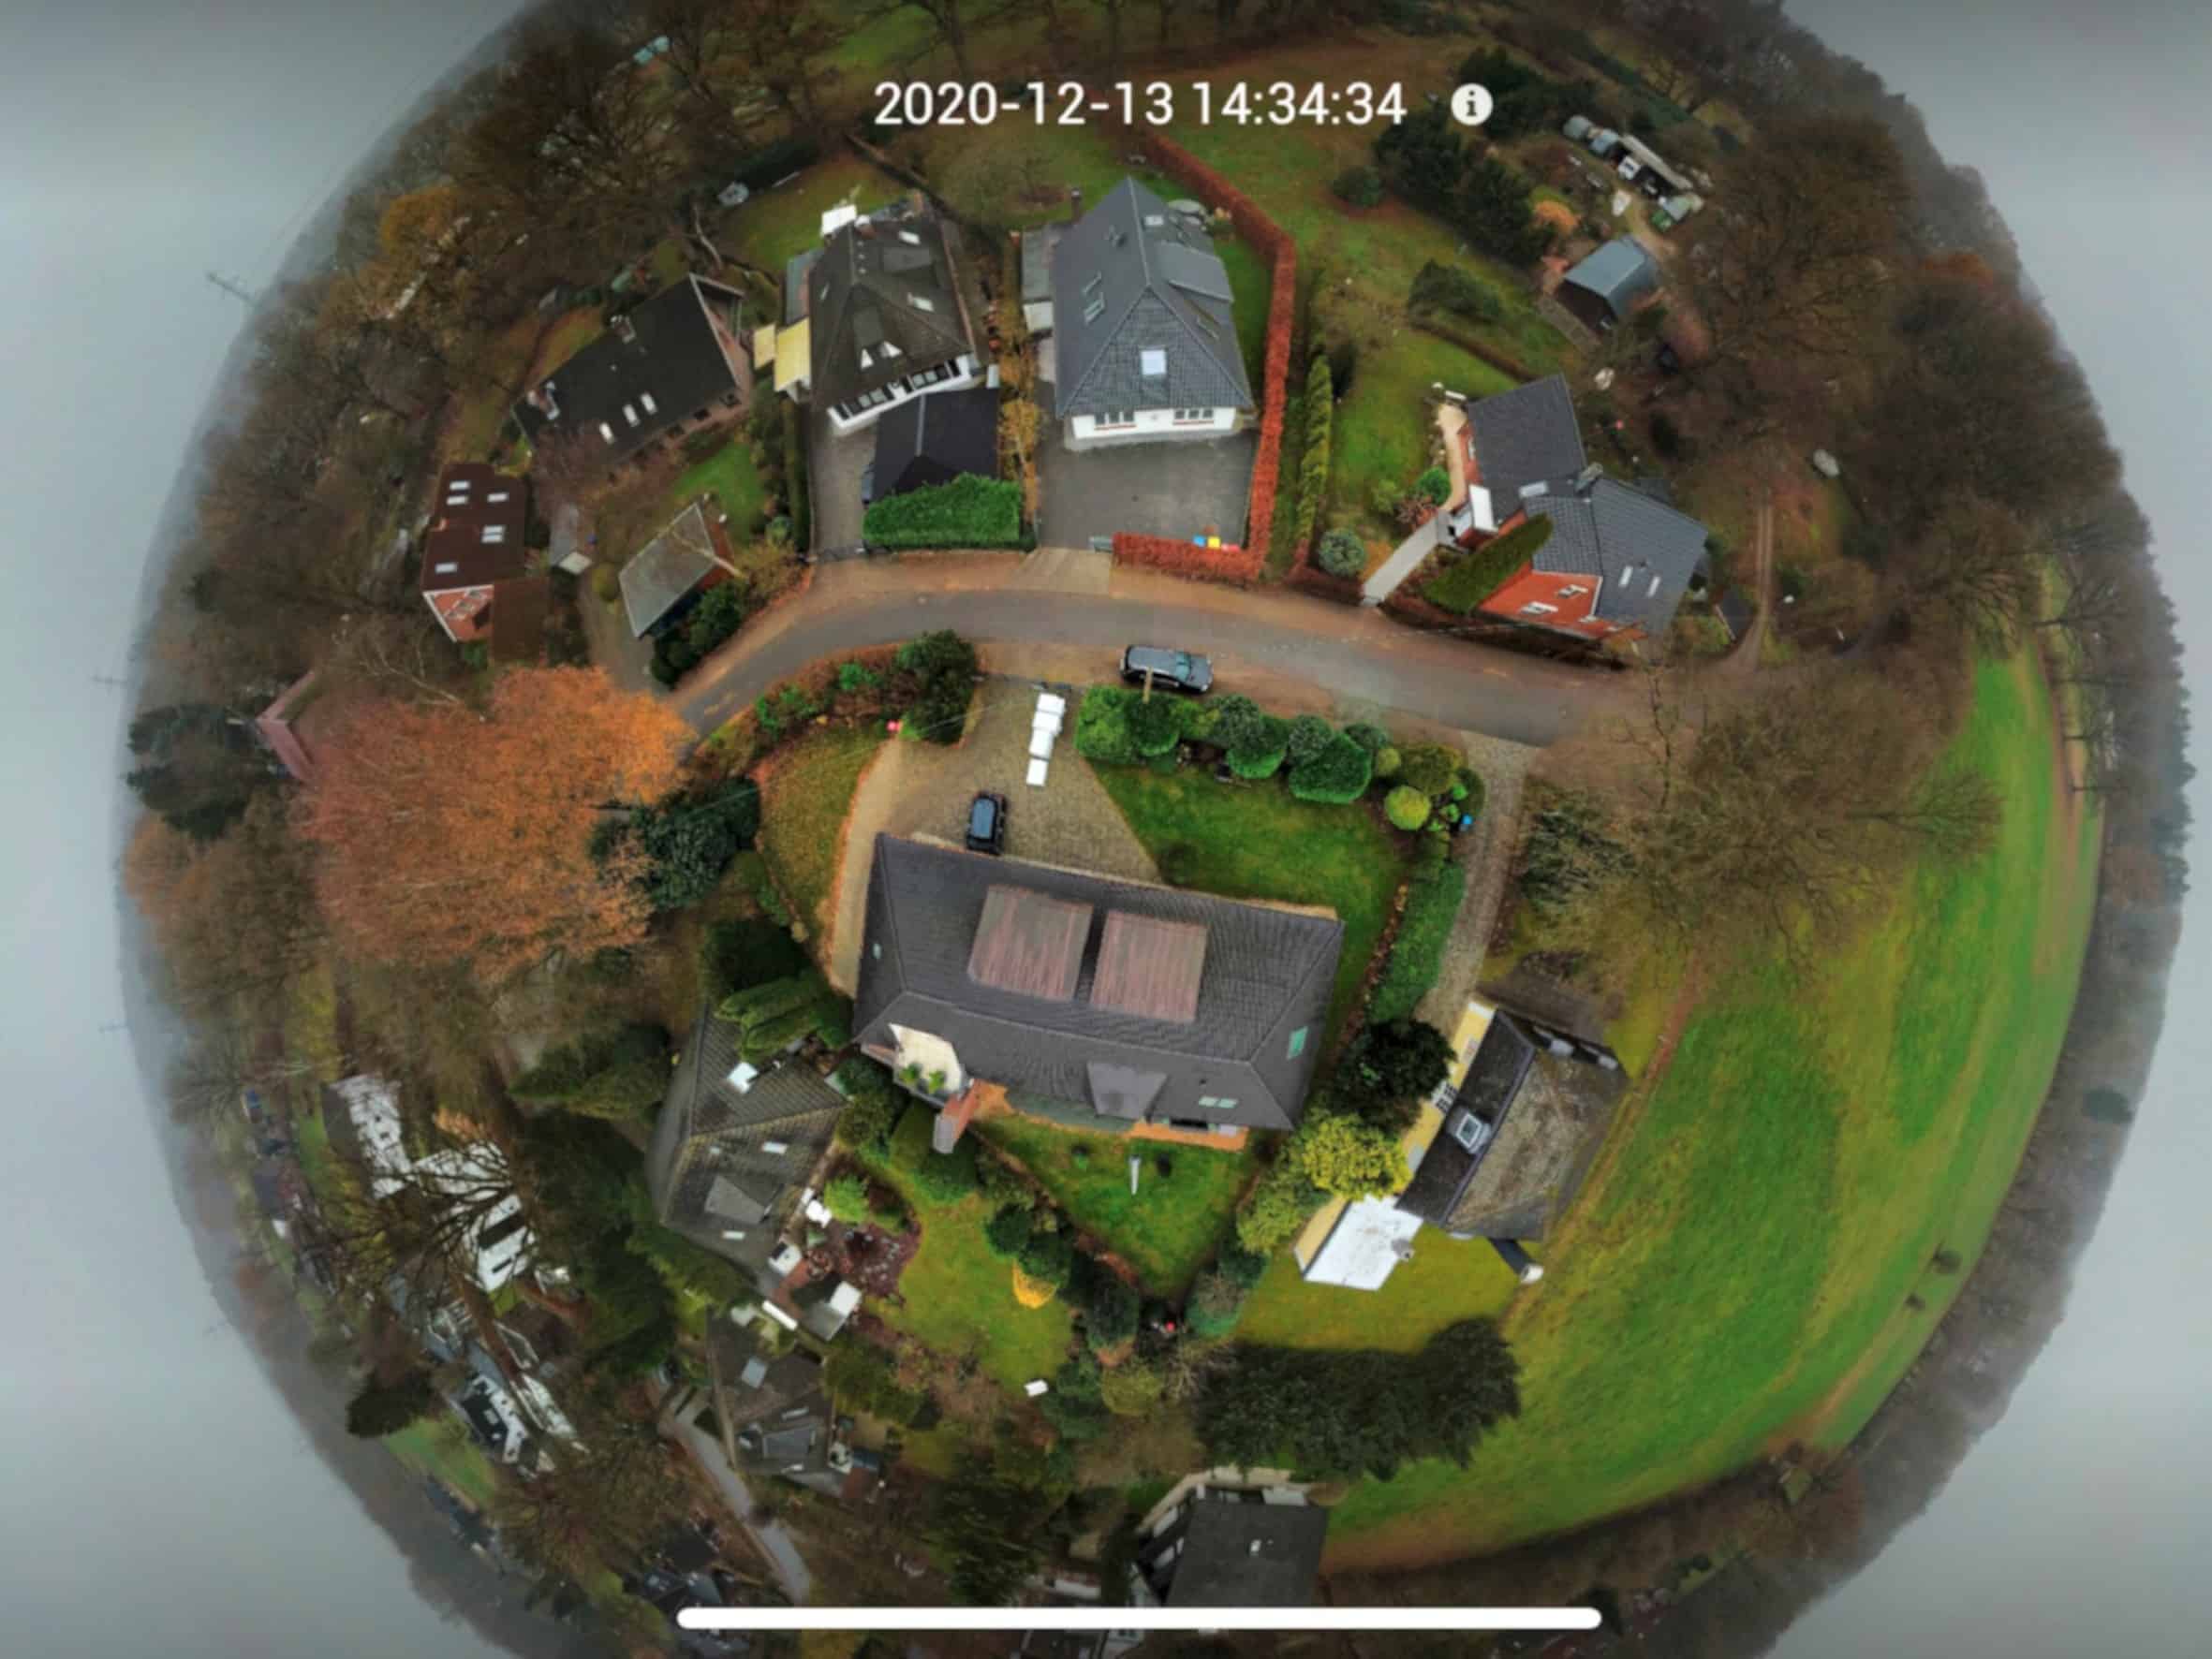 DJI Drohne Panoramafunktion im Test